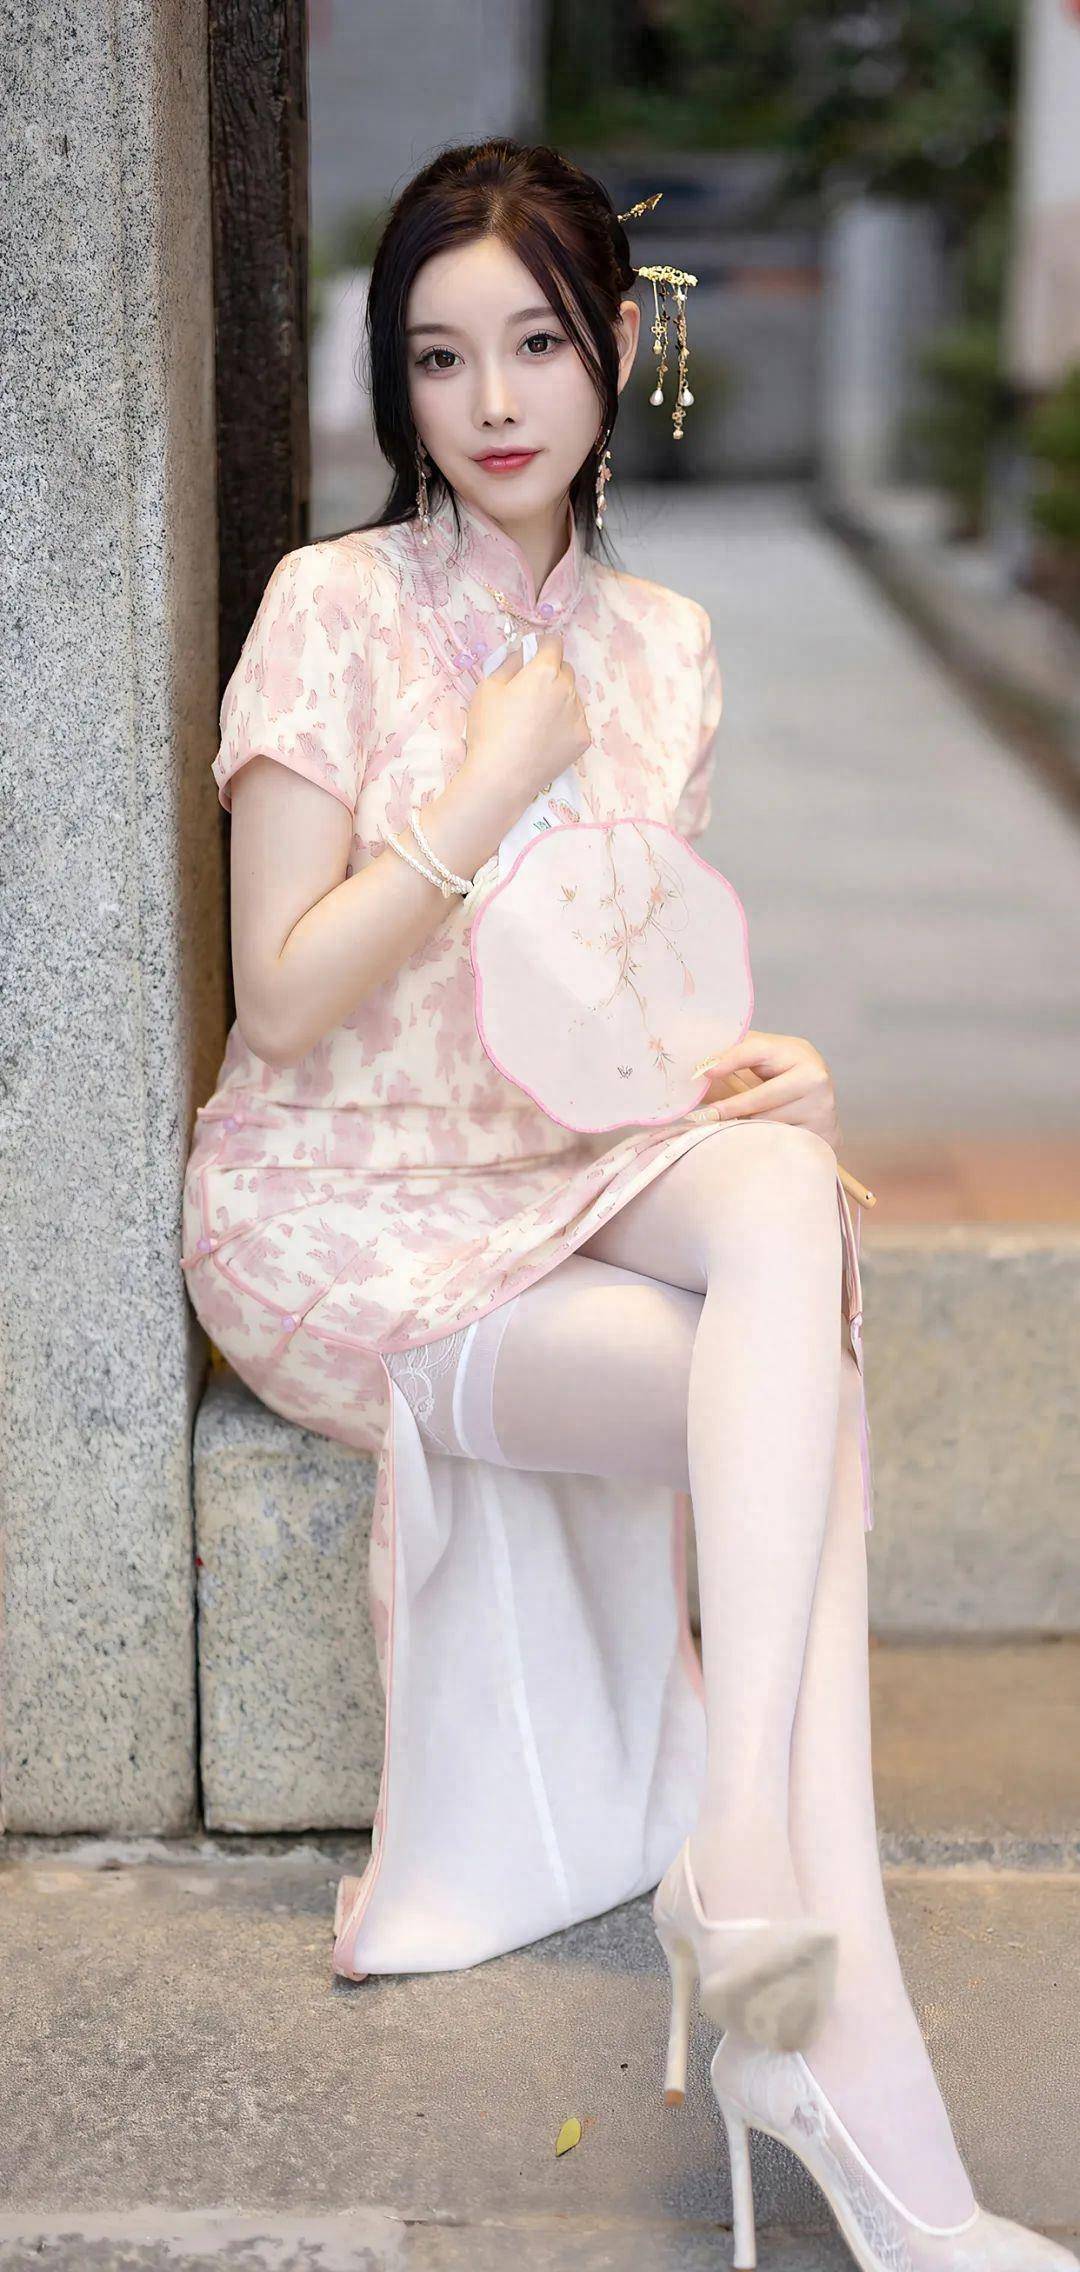 杨晨晨的着装:旗袍与白丝,古典与现代的完美碰撞